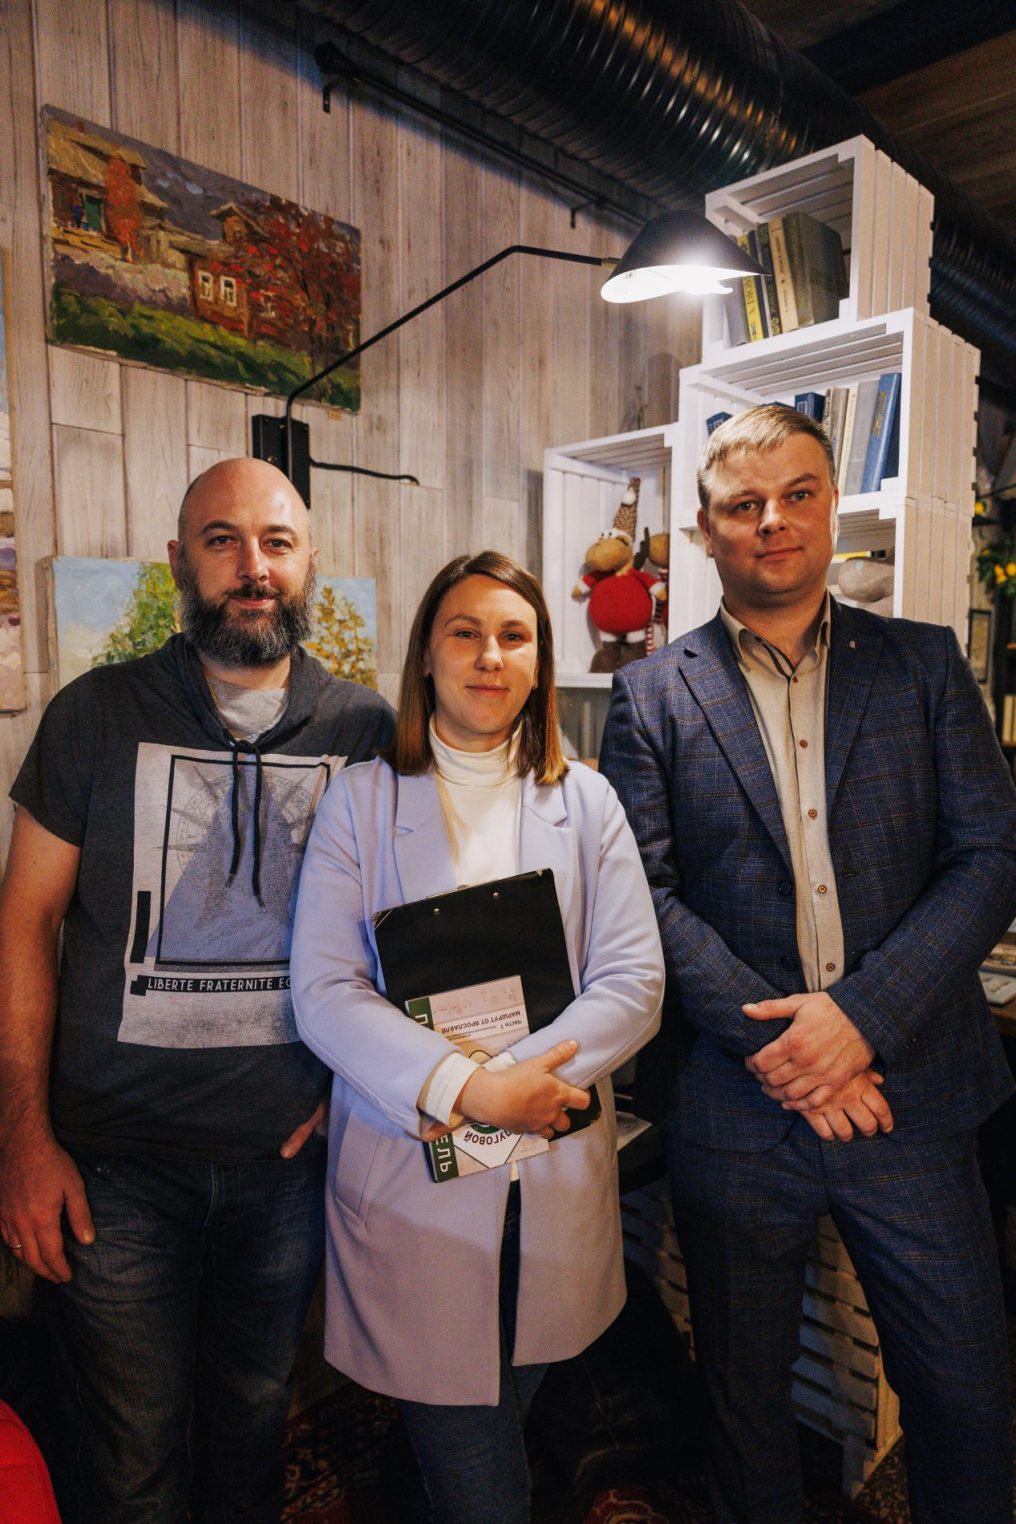 Туристы из Костромы увозят посуду с историей